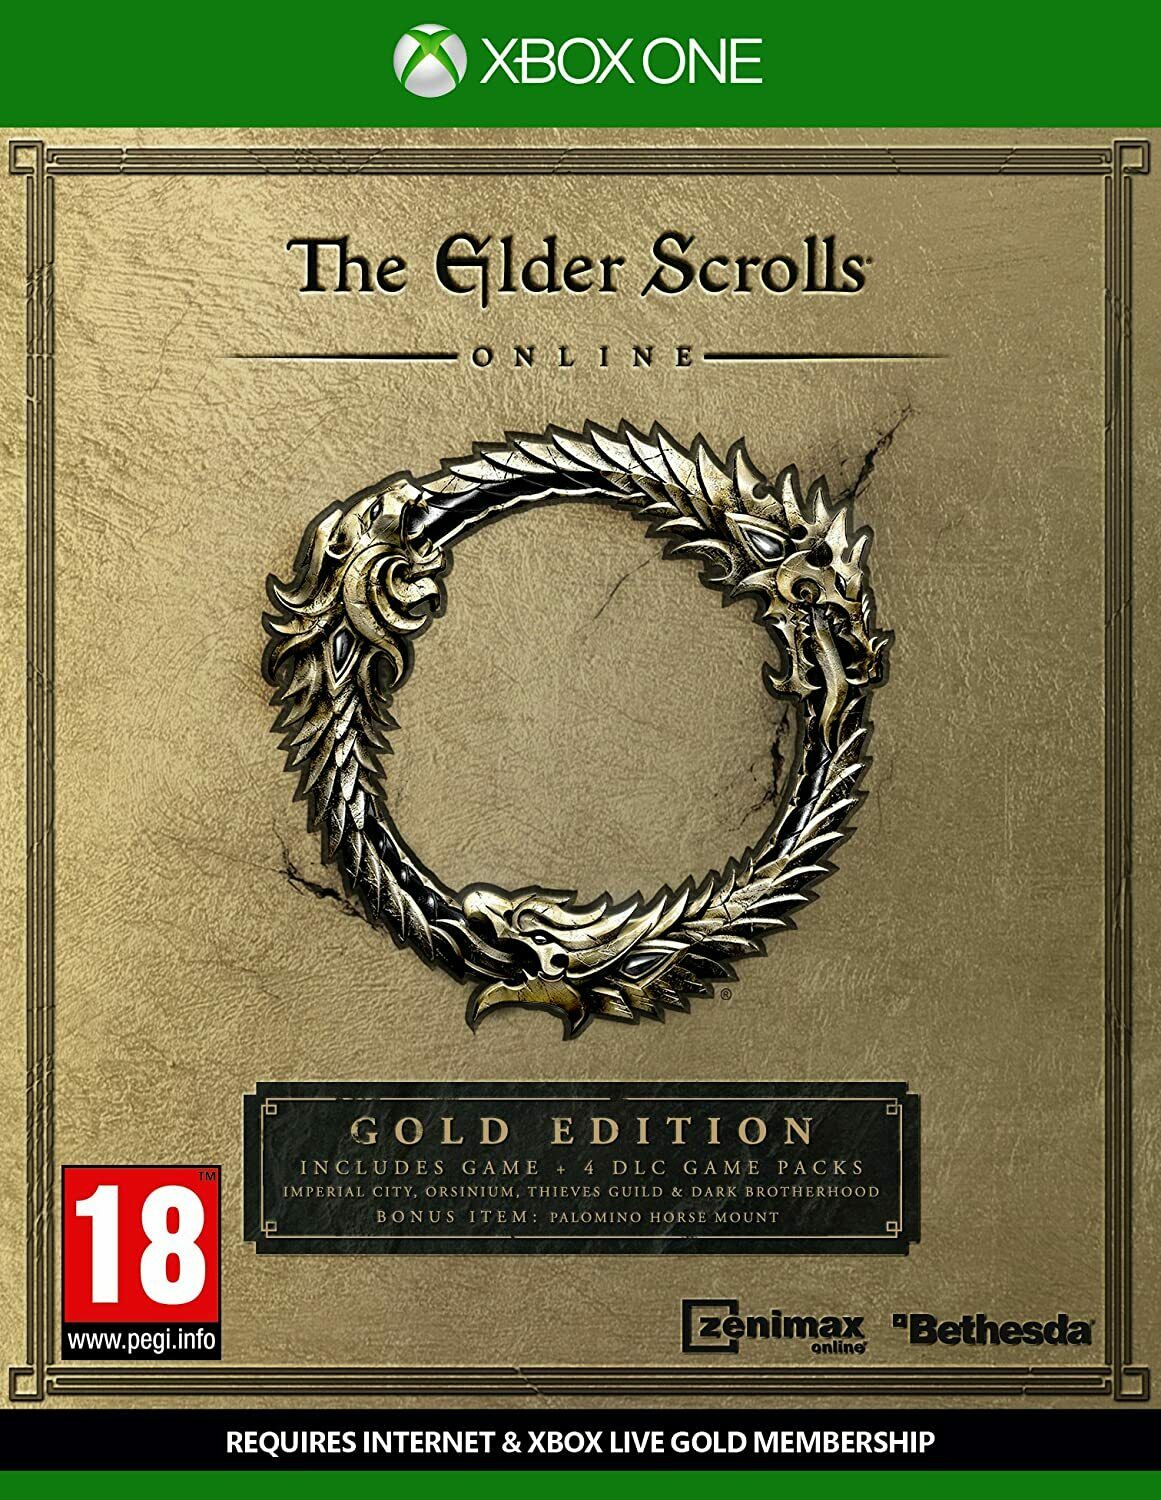 The Elder Scrolls Online Gold Edition (Xbox One) - saynama